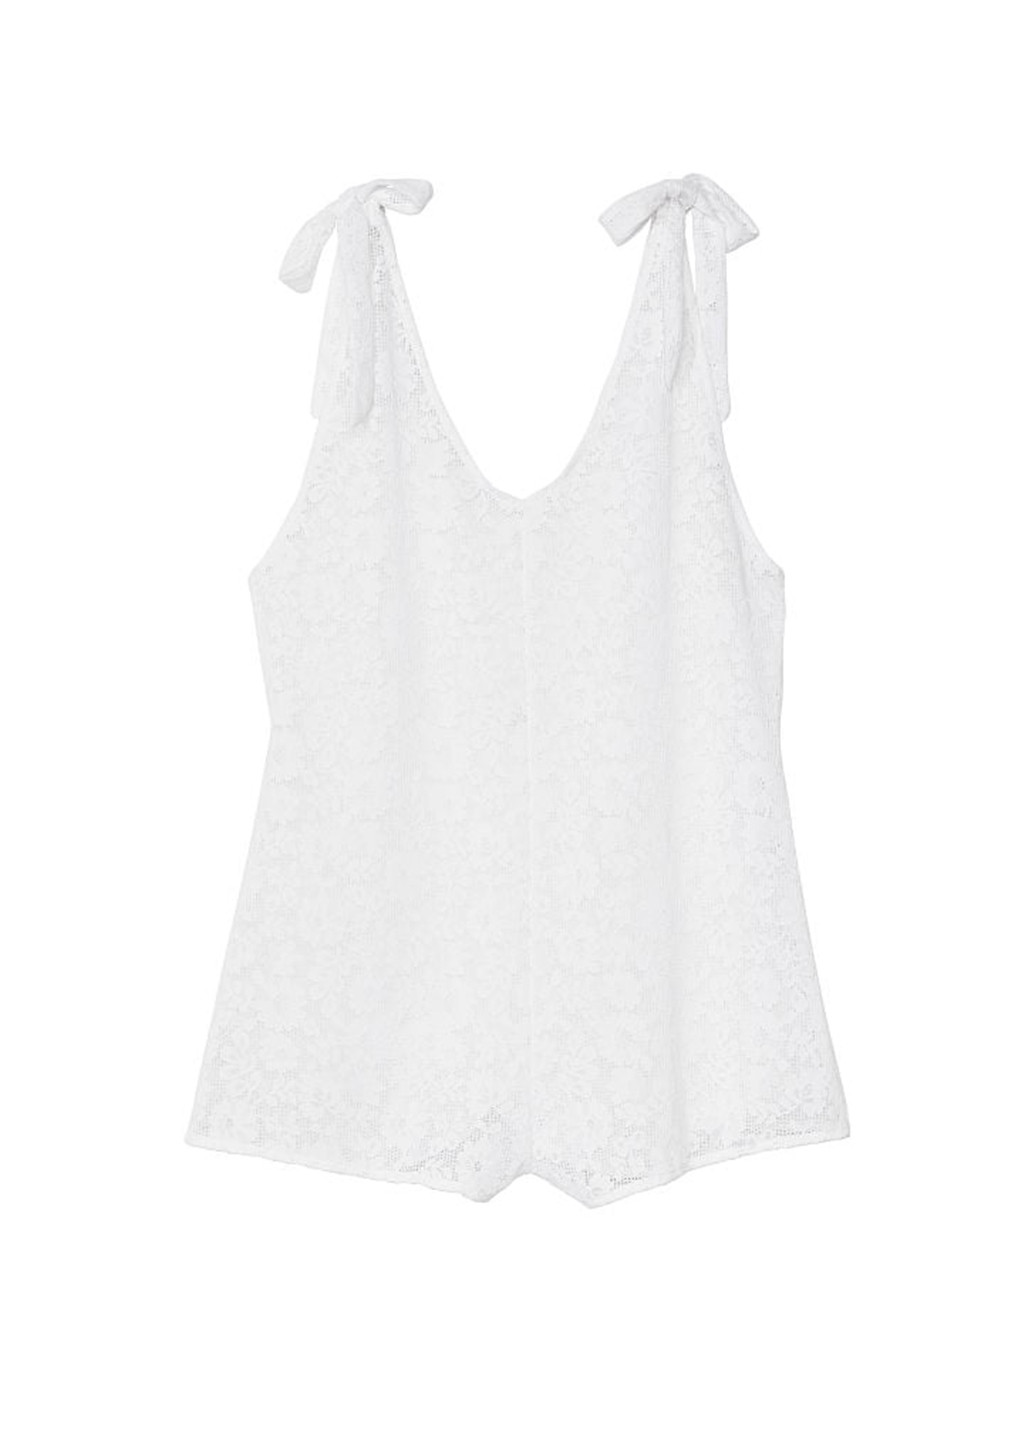 Комбинезон Victoria's Secret комбинезон-шорты однотонный белый пляжный кружево, полиамид